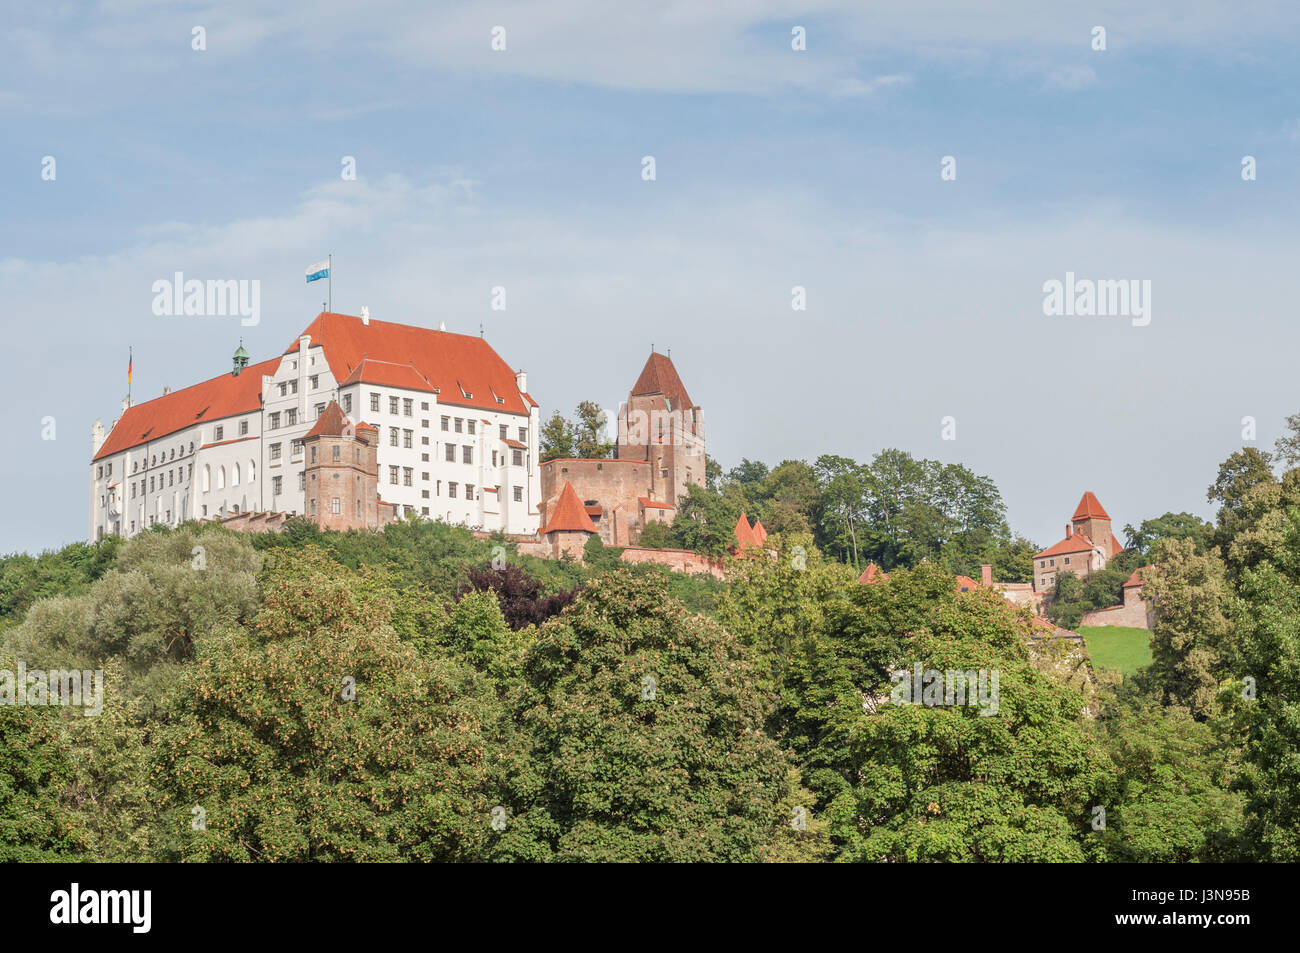 Castle Trausnitz, Landshut, Bavaria, Germany Stock Photo